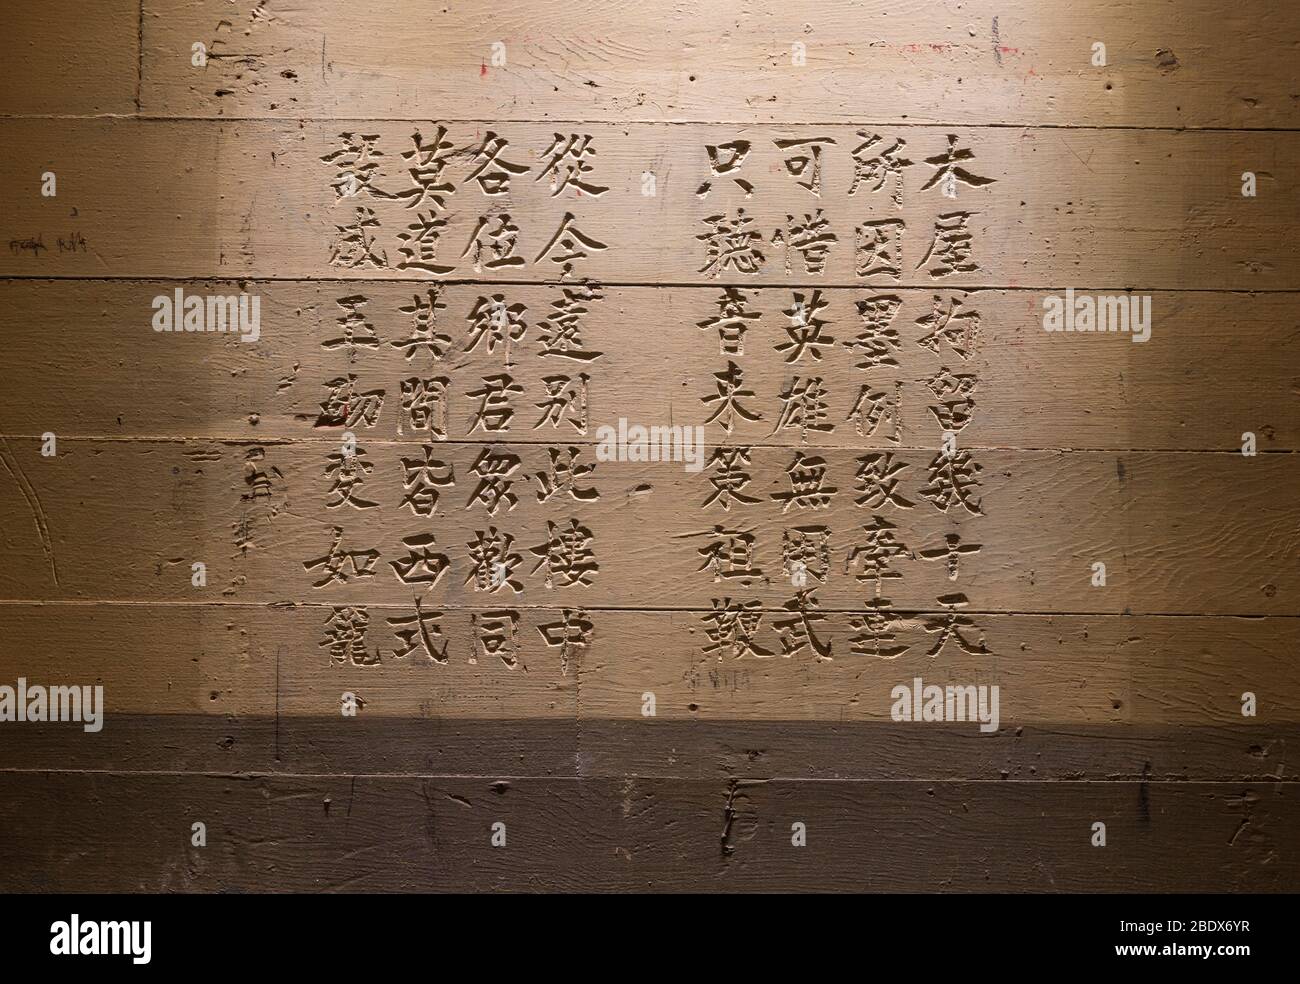 Chinese Writing, Angel Island, California Stock Photo